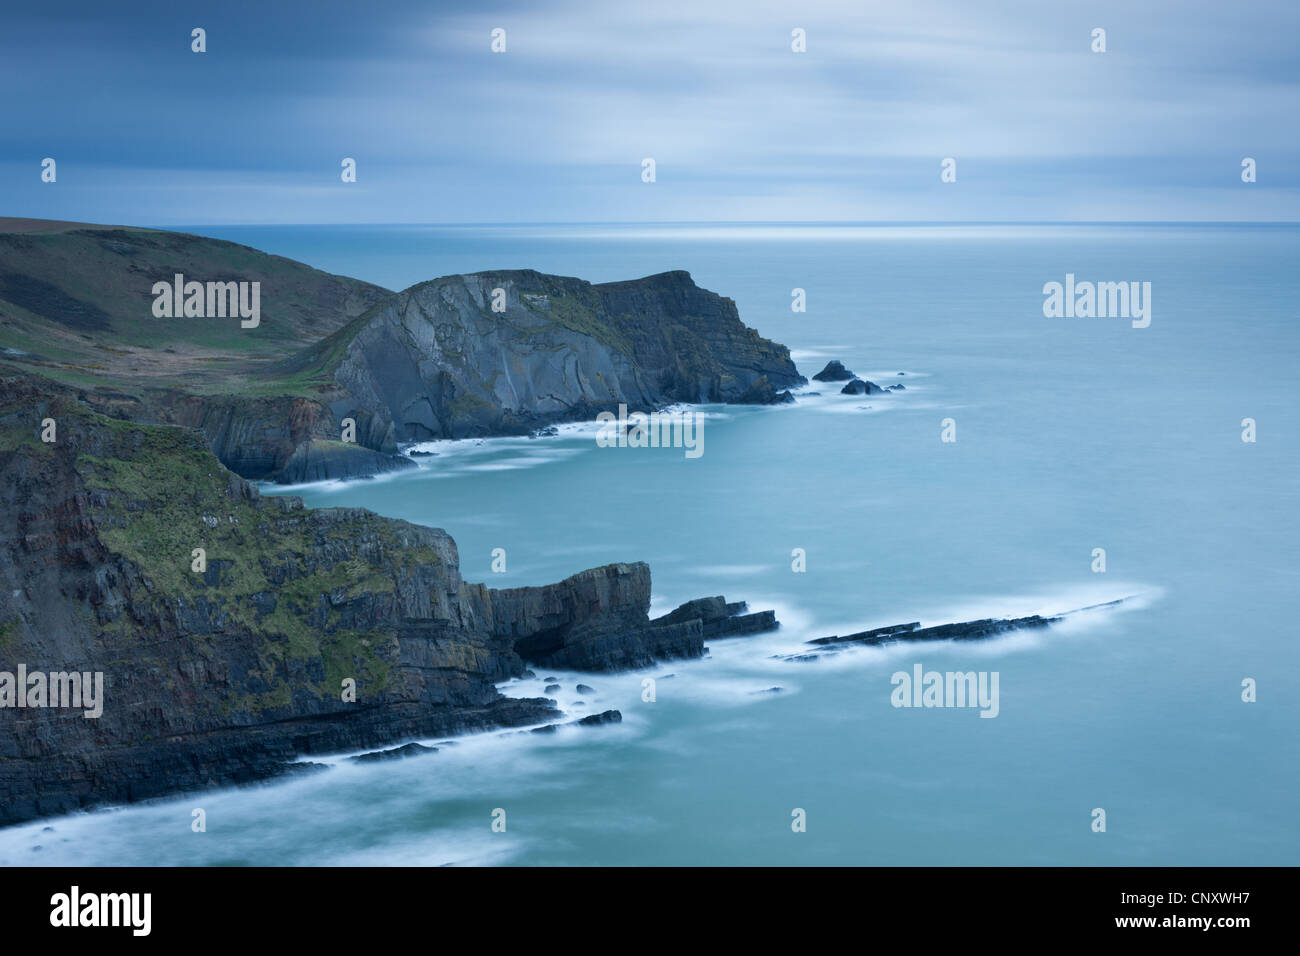 Cliffs, près de Hartland Point dans le Nord du Devon, Angleterre. Printemps (avril) 2012. Banque D'Images